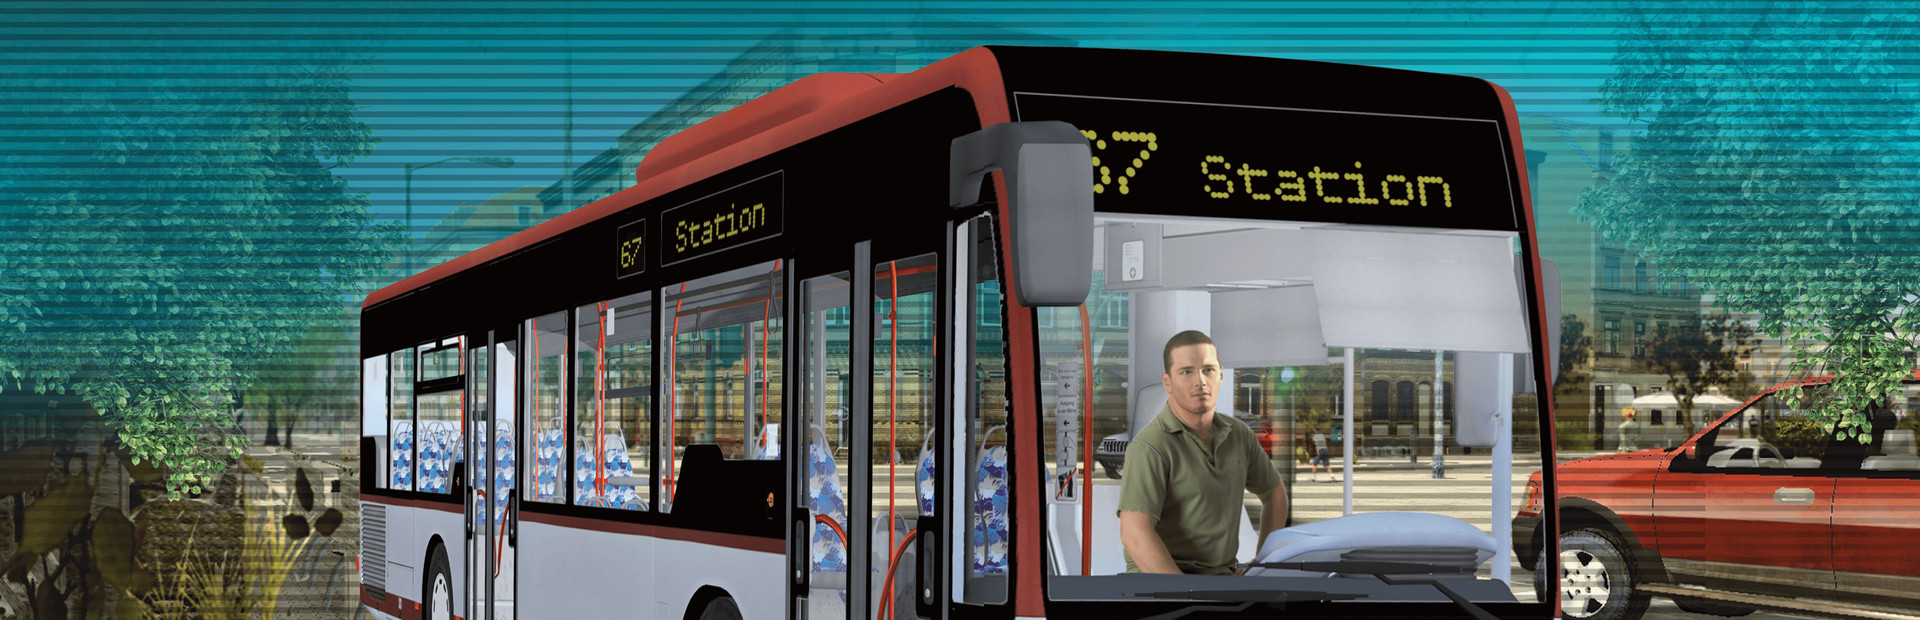 Bus-Simulator 2012 cover image